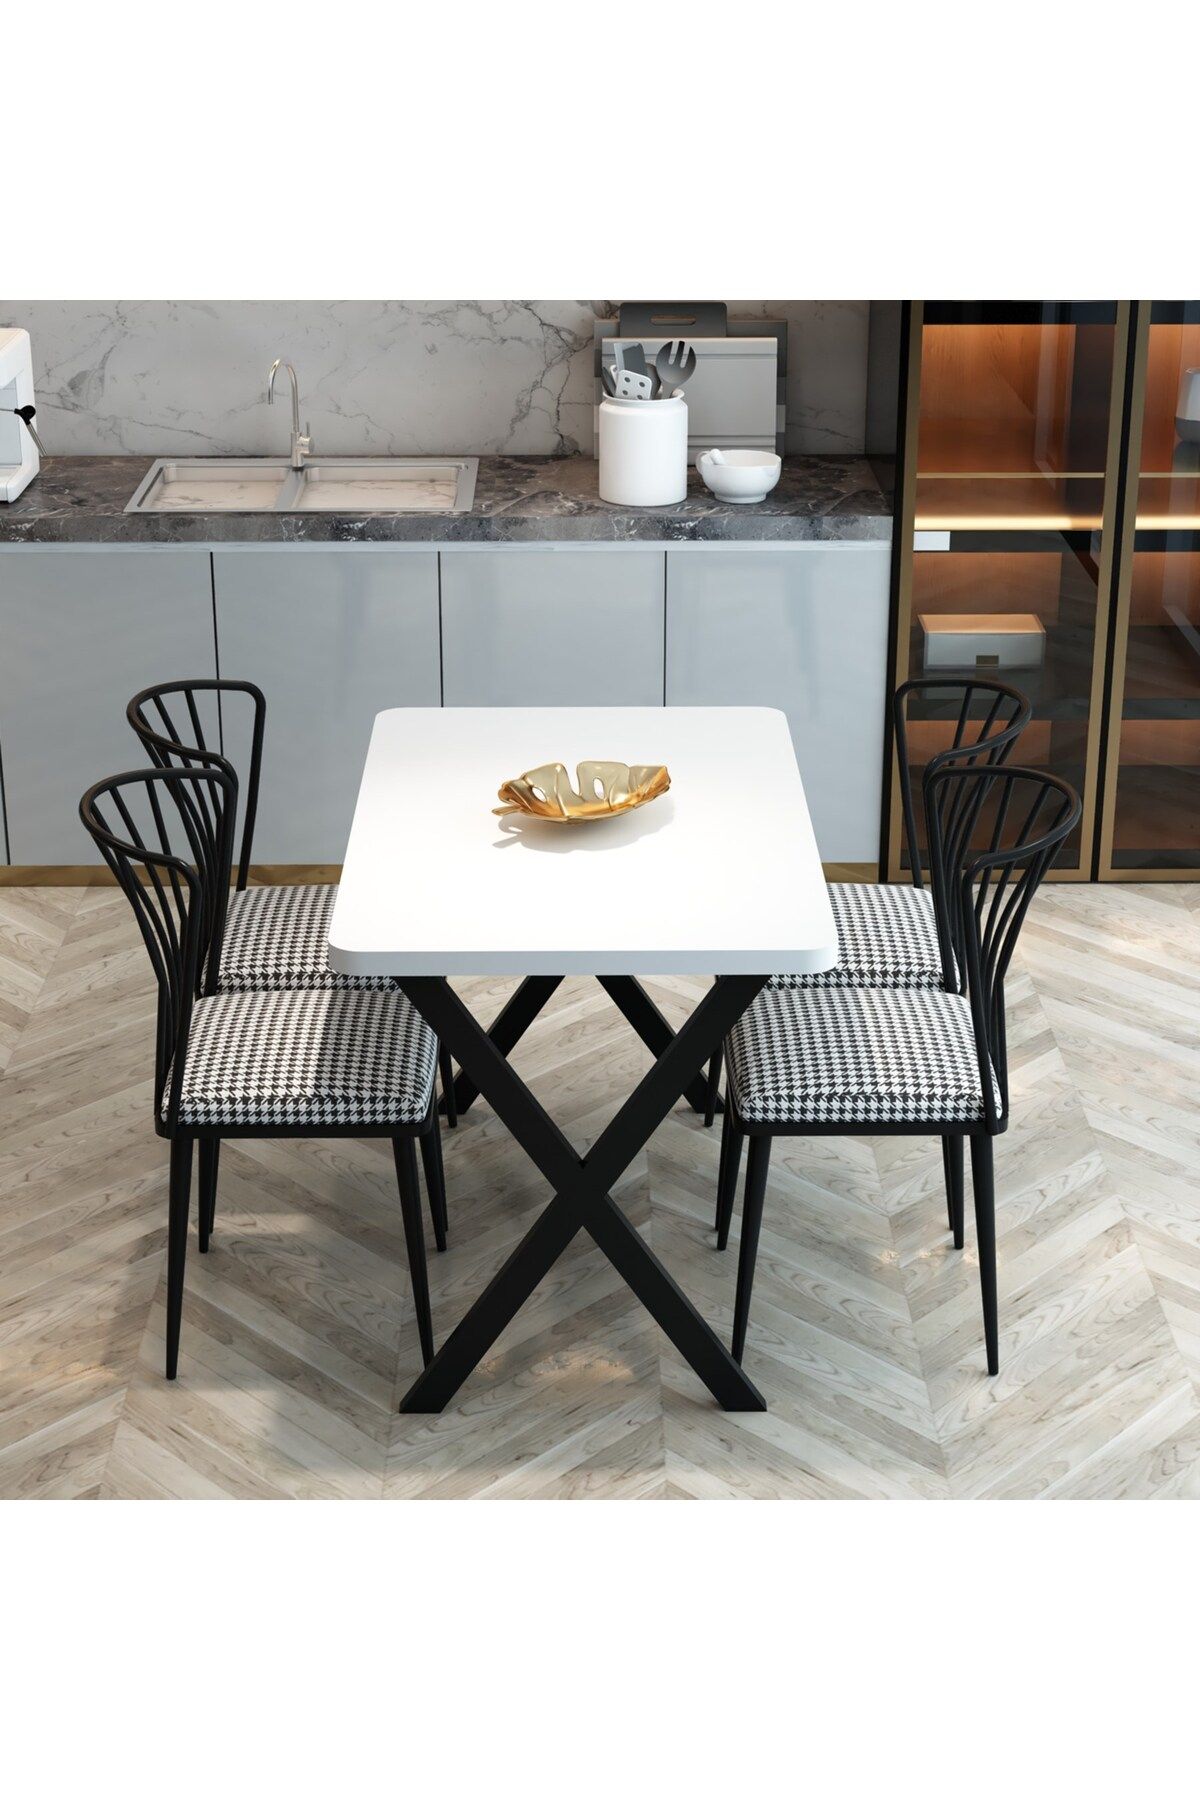 FurnatureDesign Yemek Masası Takımı X Ayaklı Yemek Masası 70x110 + 4 Adet Sandalye - Beyaz